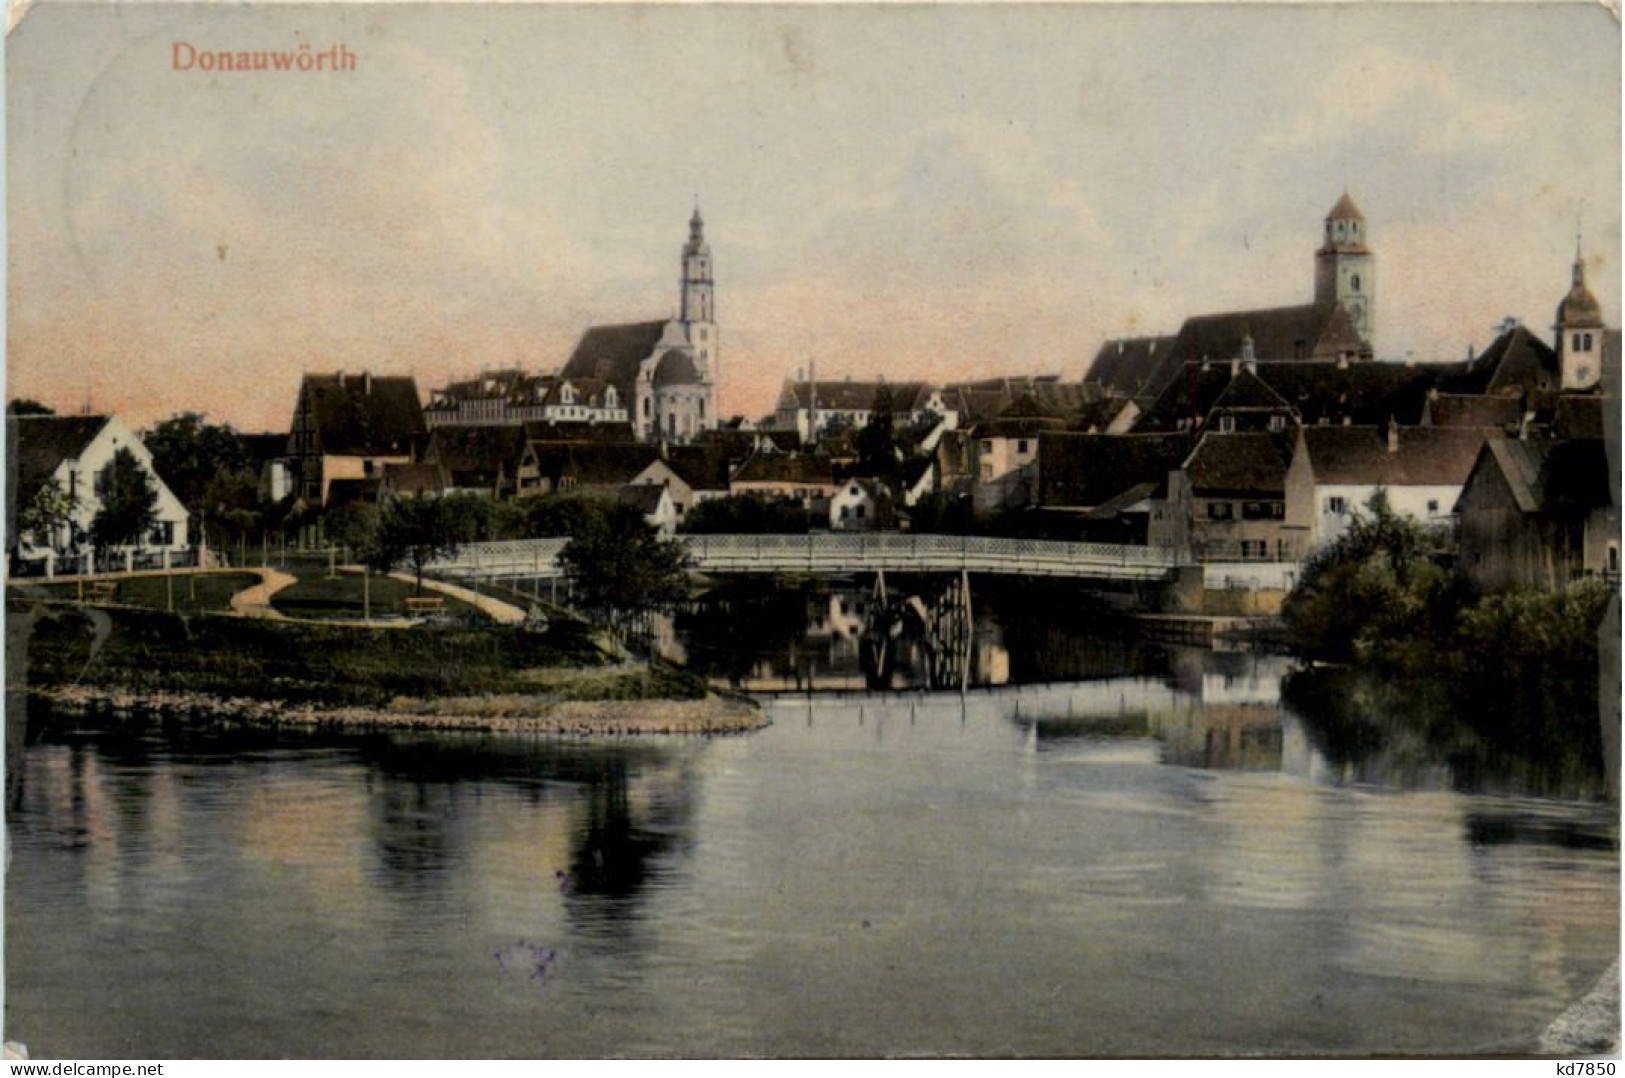 Donauwörth - Donauwoerth